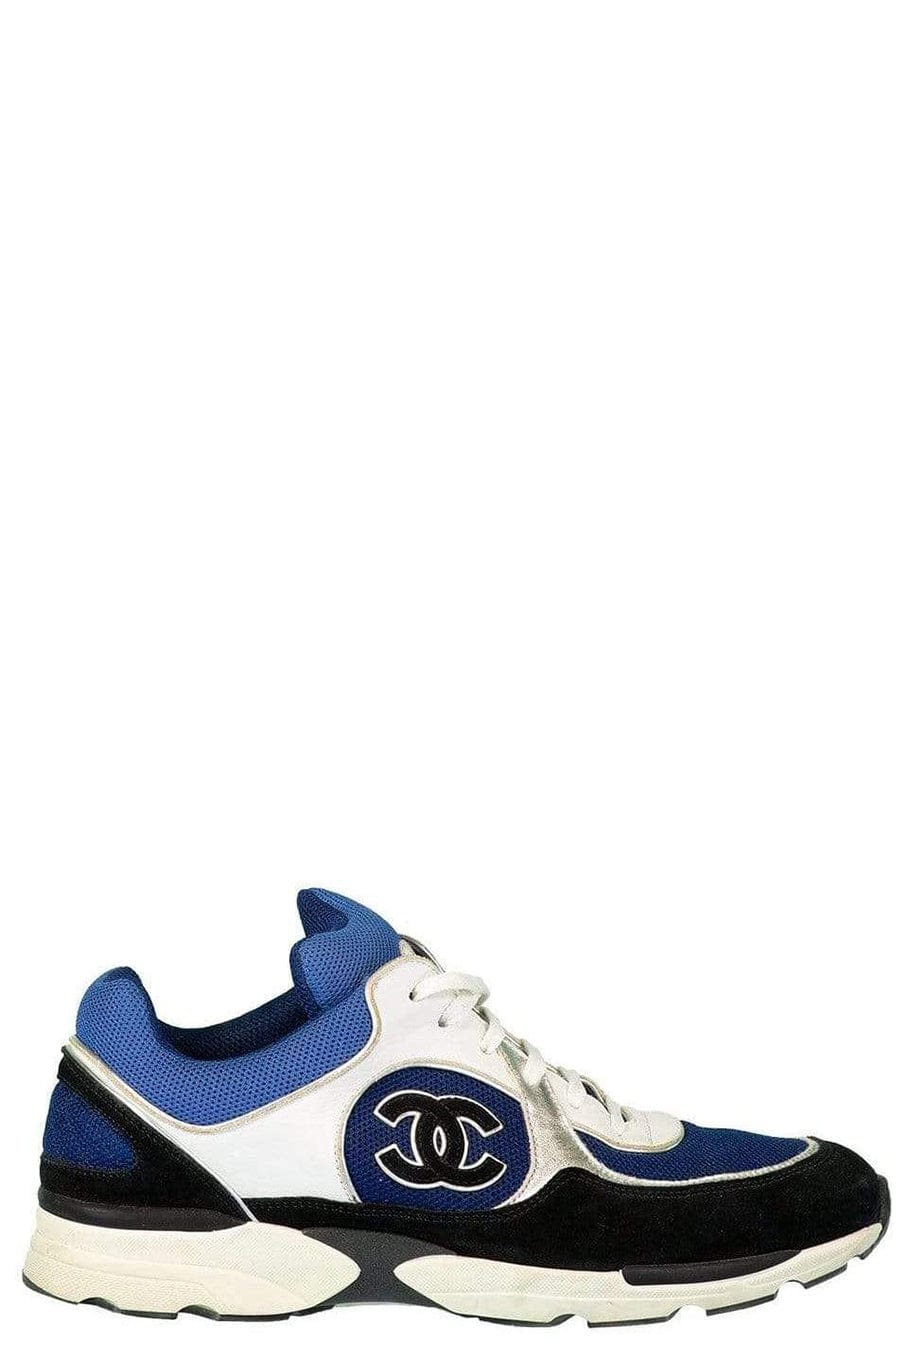 CHANEL-Chanel Low Top Logo Sneaker-BLUE